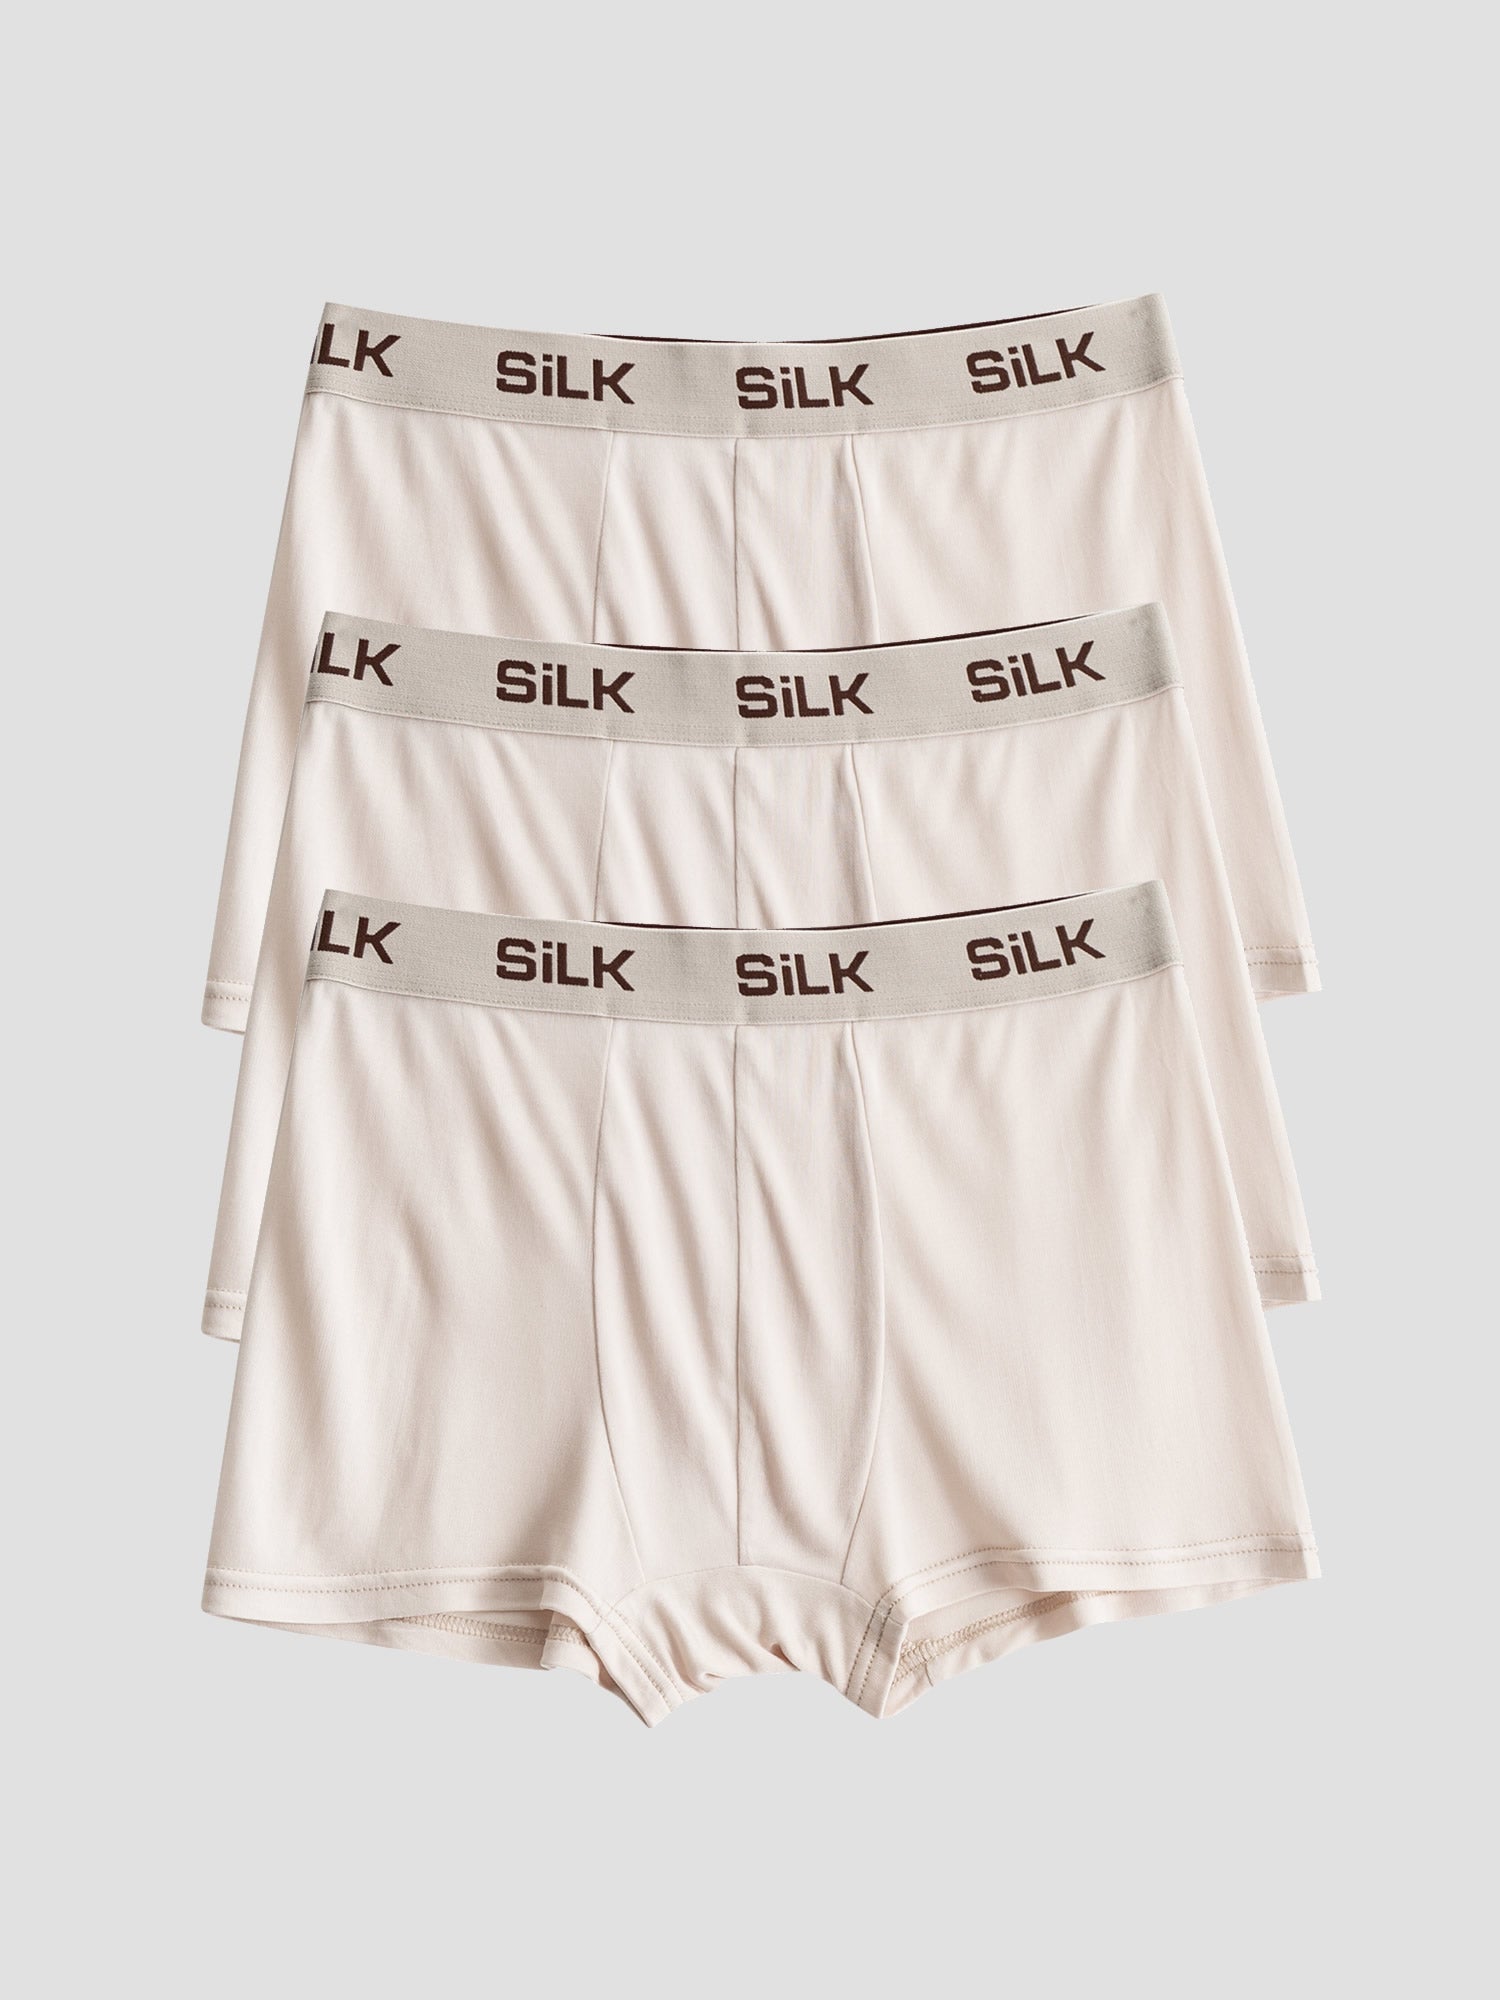 Silksilky Breathable Silk Boxer Brief 3Pcs Mens Brief Underwear – SILKSILKY